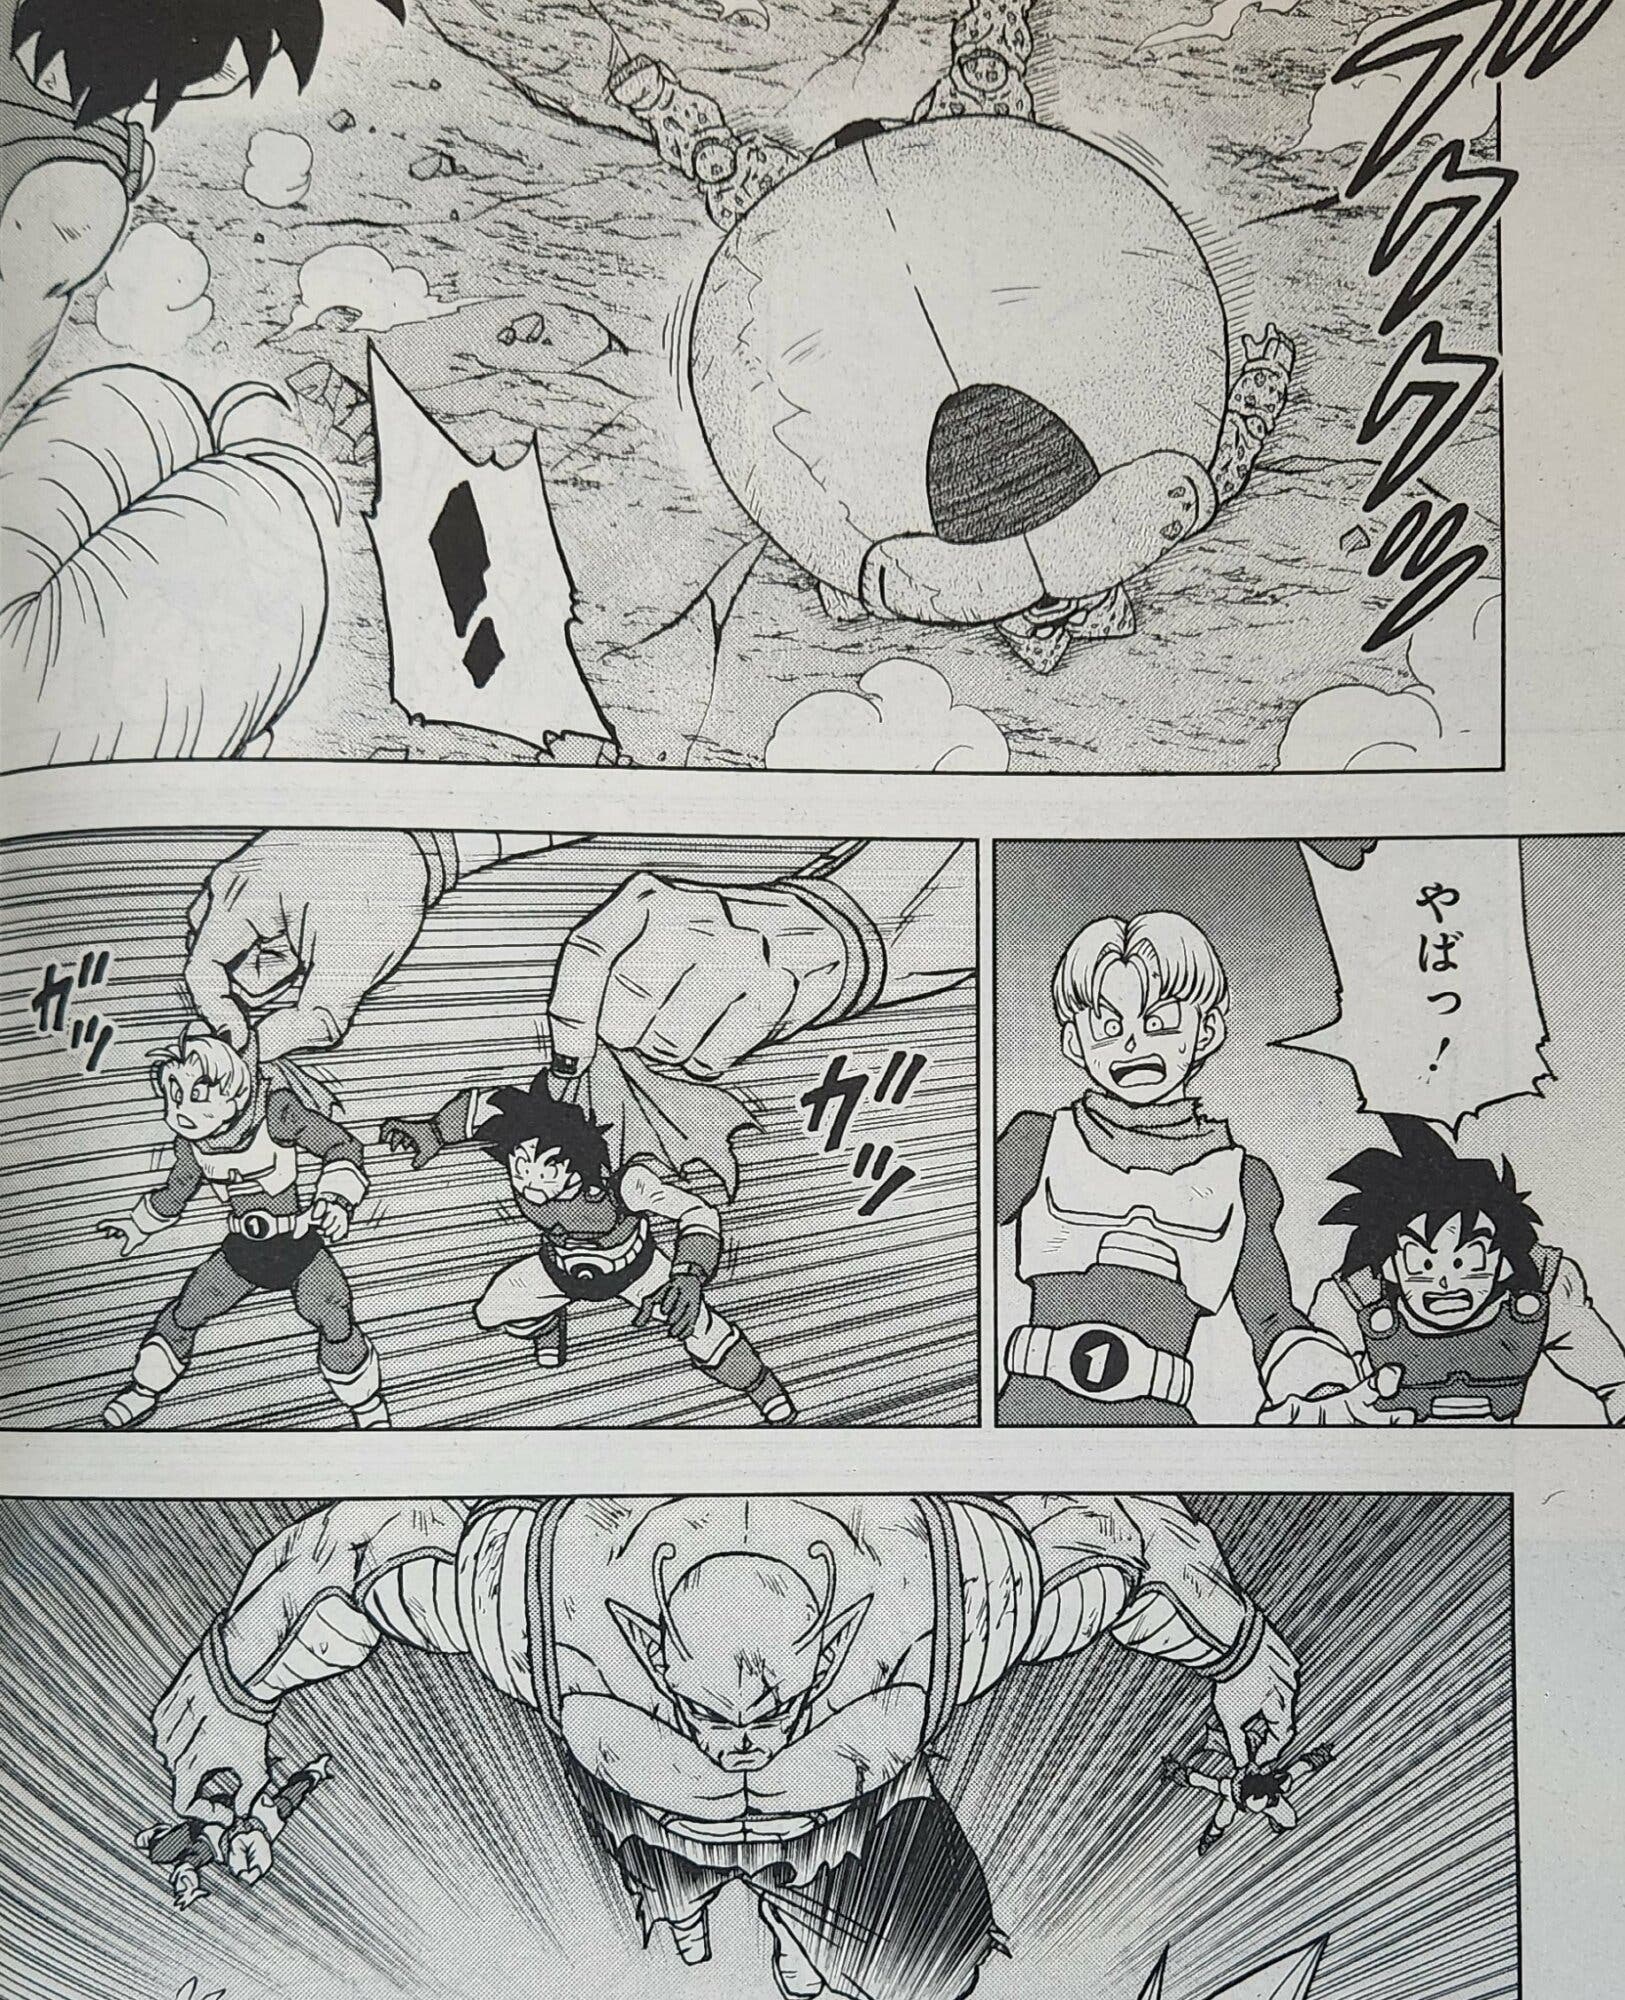 Dragon Ball Super: ¿Cuándo se estrena el capítulo 100 del manga